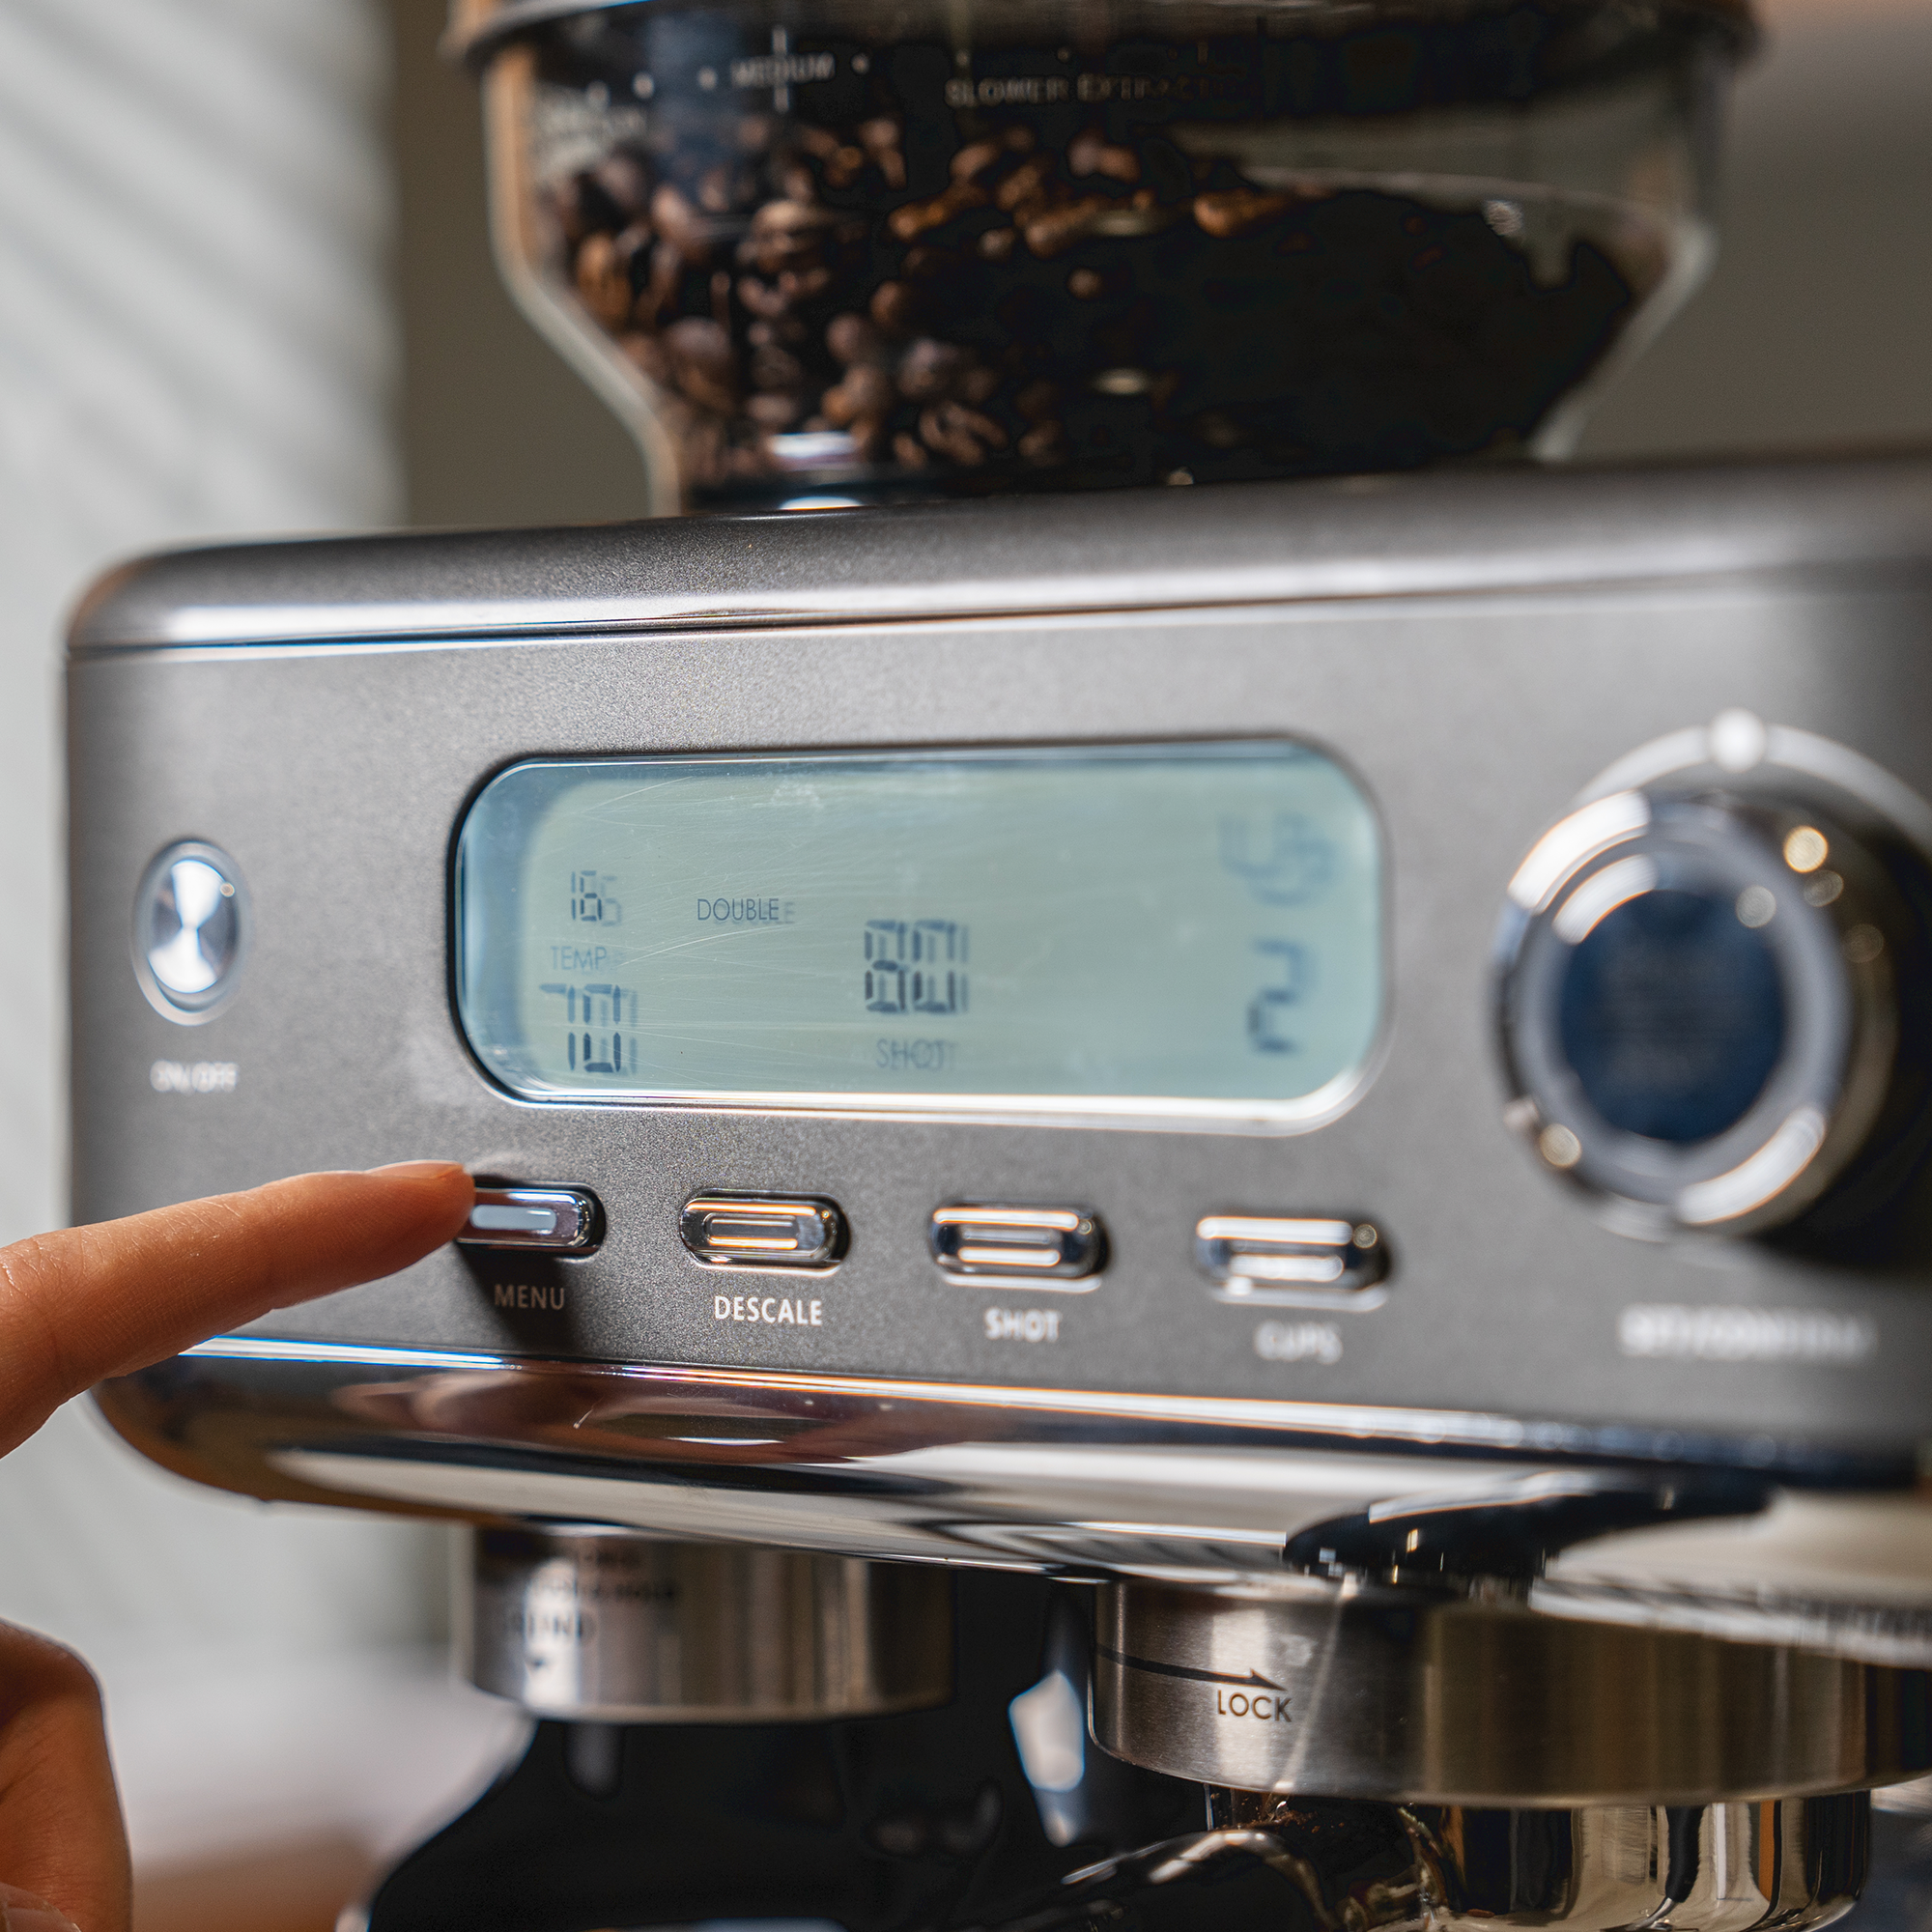 All-in-One Coffee & Espresso Maker, Cappuccino, Latte Machine +